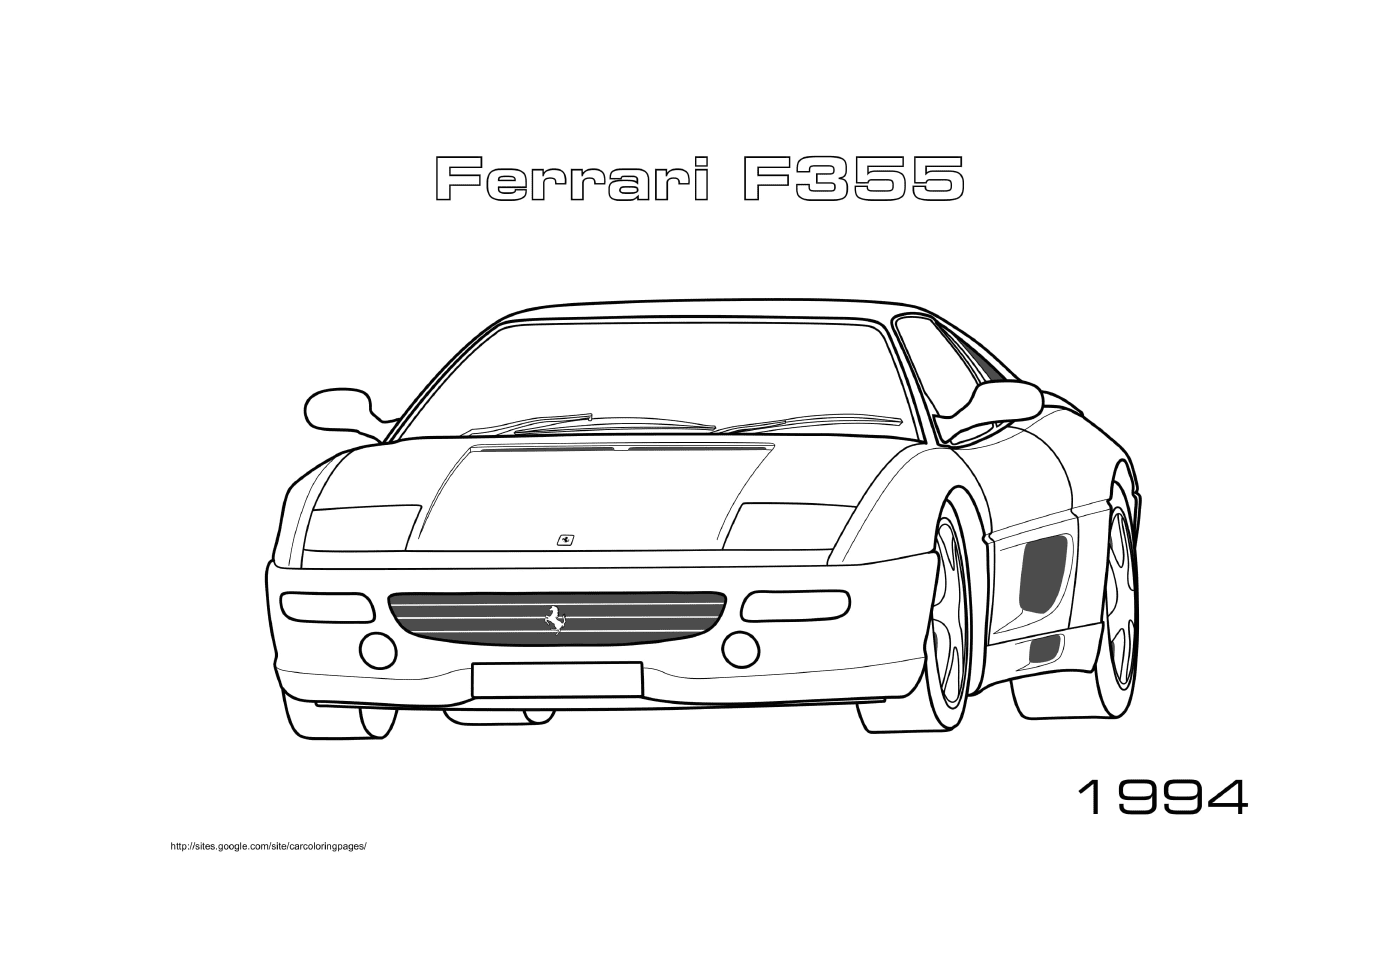  Ferrari coche F355 1994 